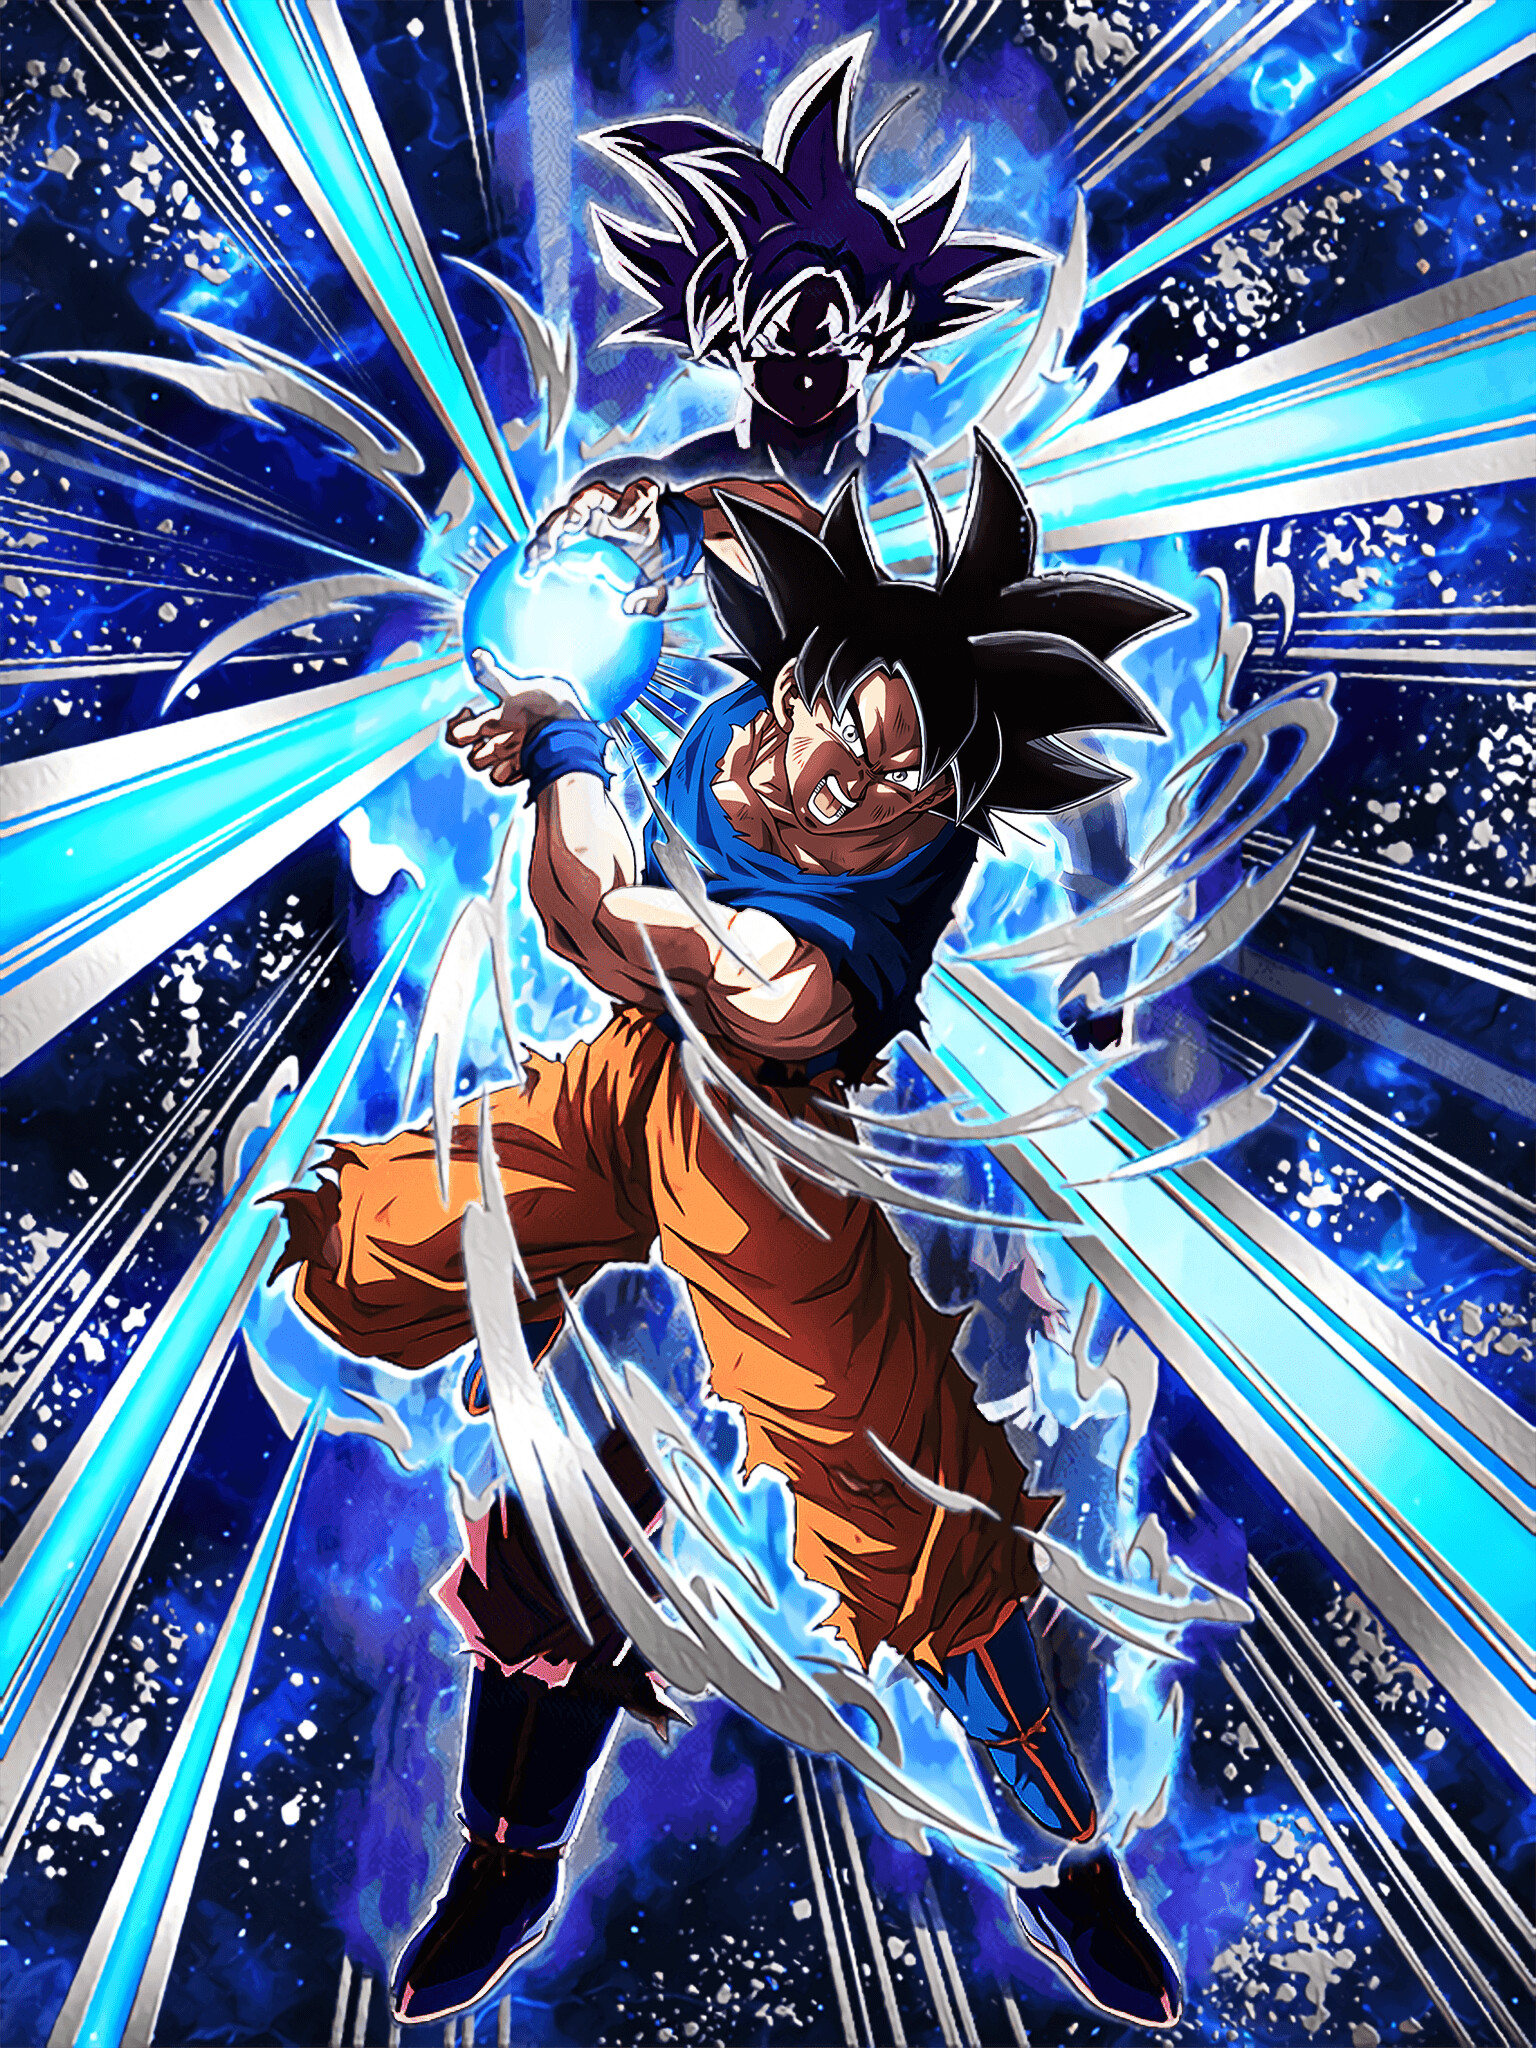 Goku Kamehameha: Ultra Instinct, Son Goku's most powerful form, Martial artist's supernatural strength. 1540x2050 HD Background.